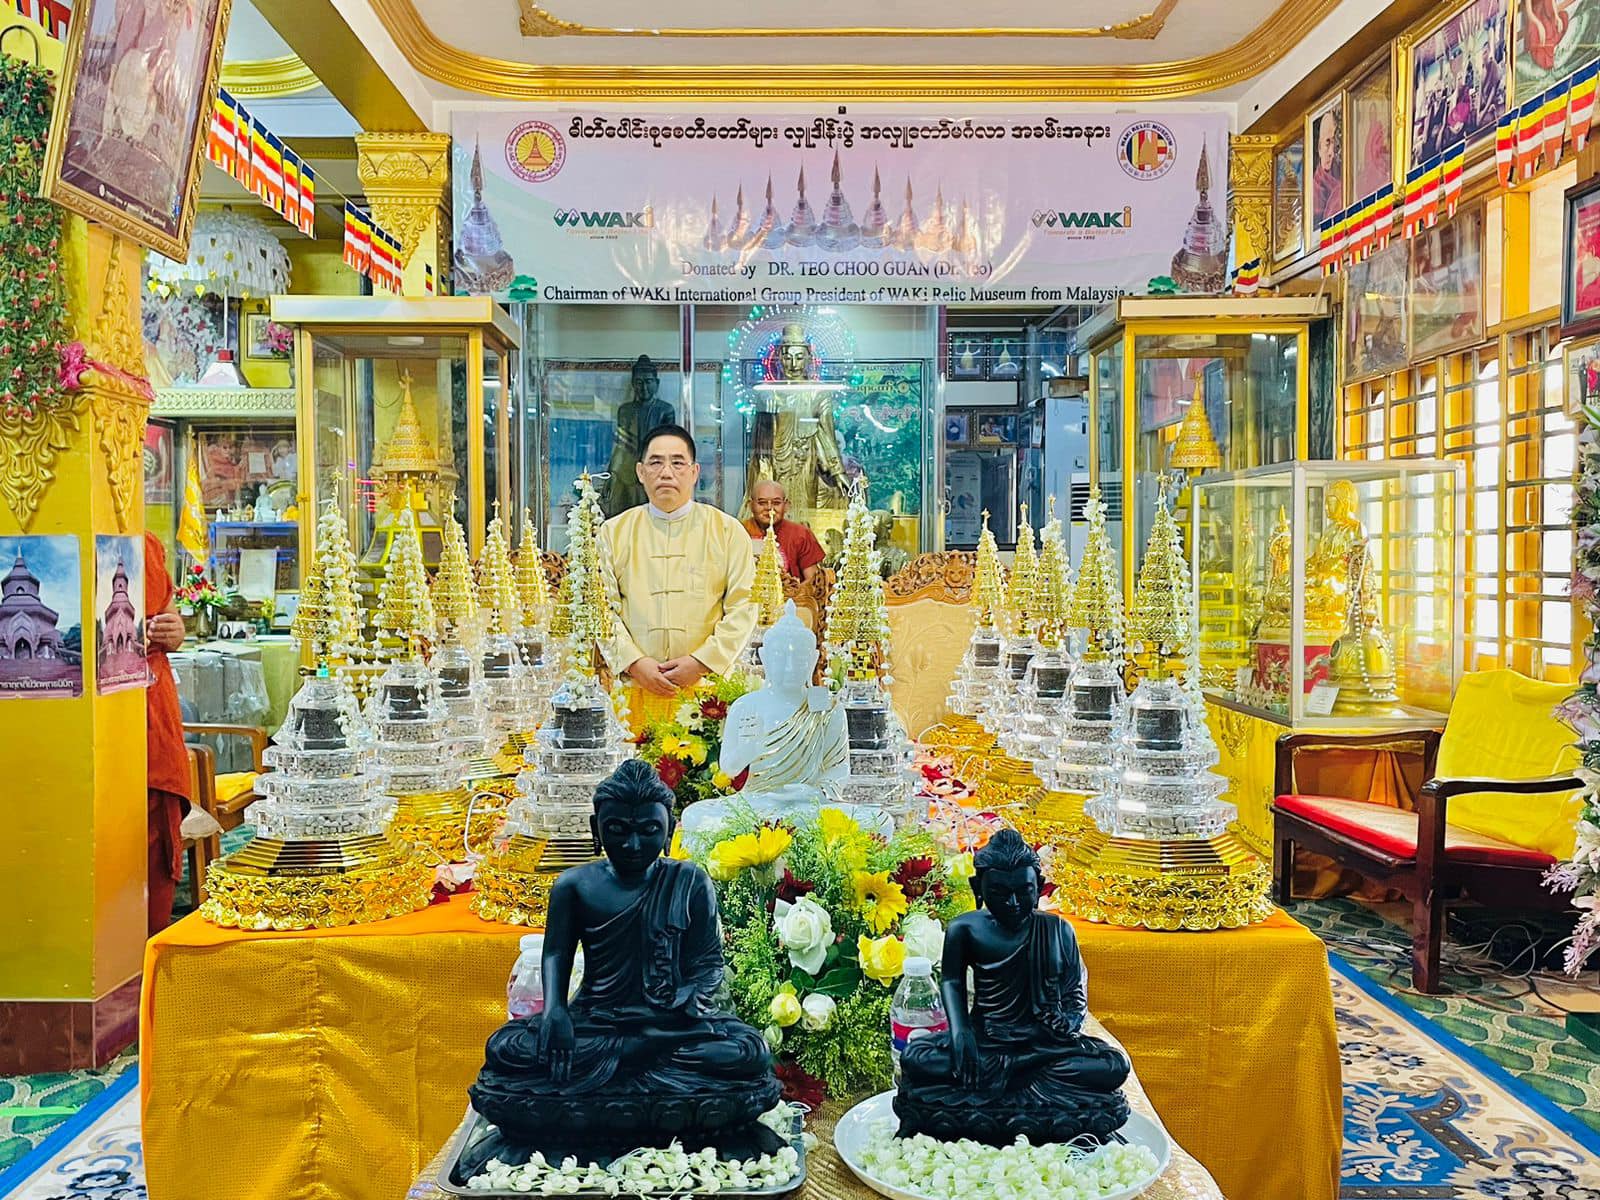 马来西亚华琪舍利子博物馆与缅甸波罗蜜寺一起举办迎接及供奉释迦摩尼佛与佛陀弟子舍利子的华琪舍利塔仪式